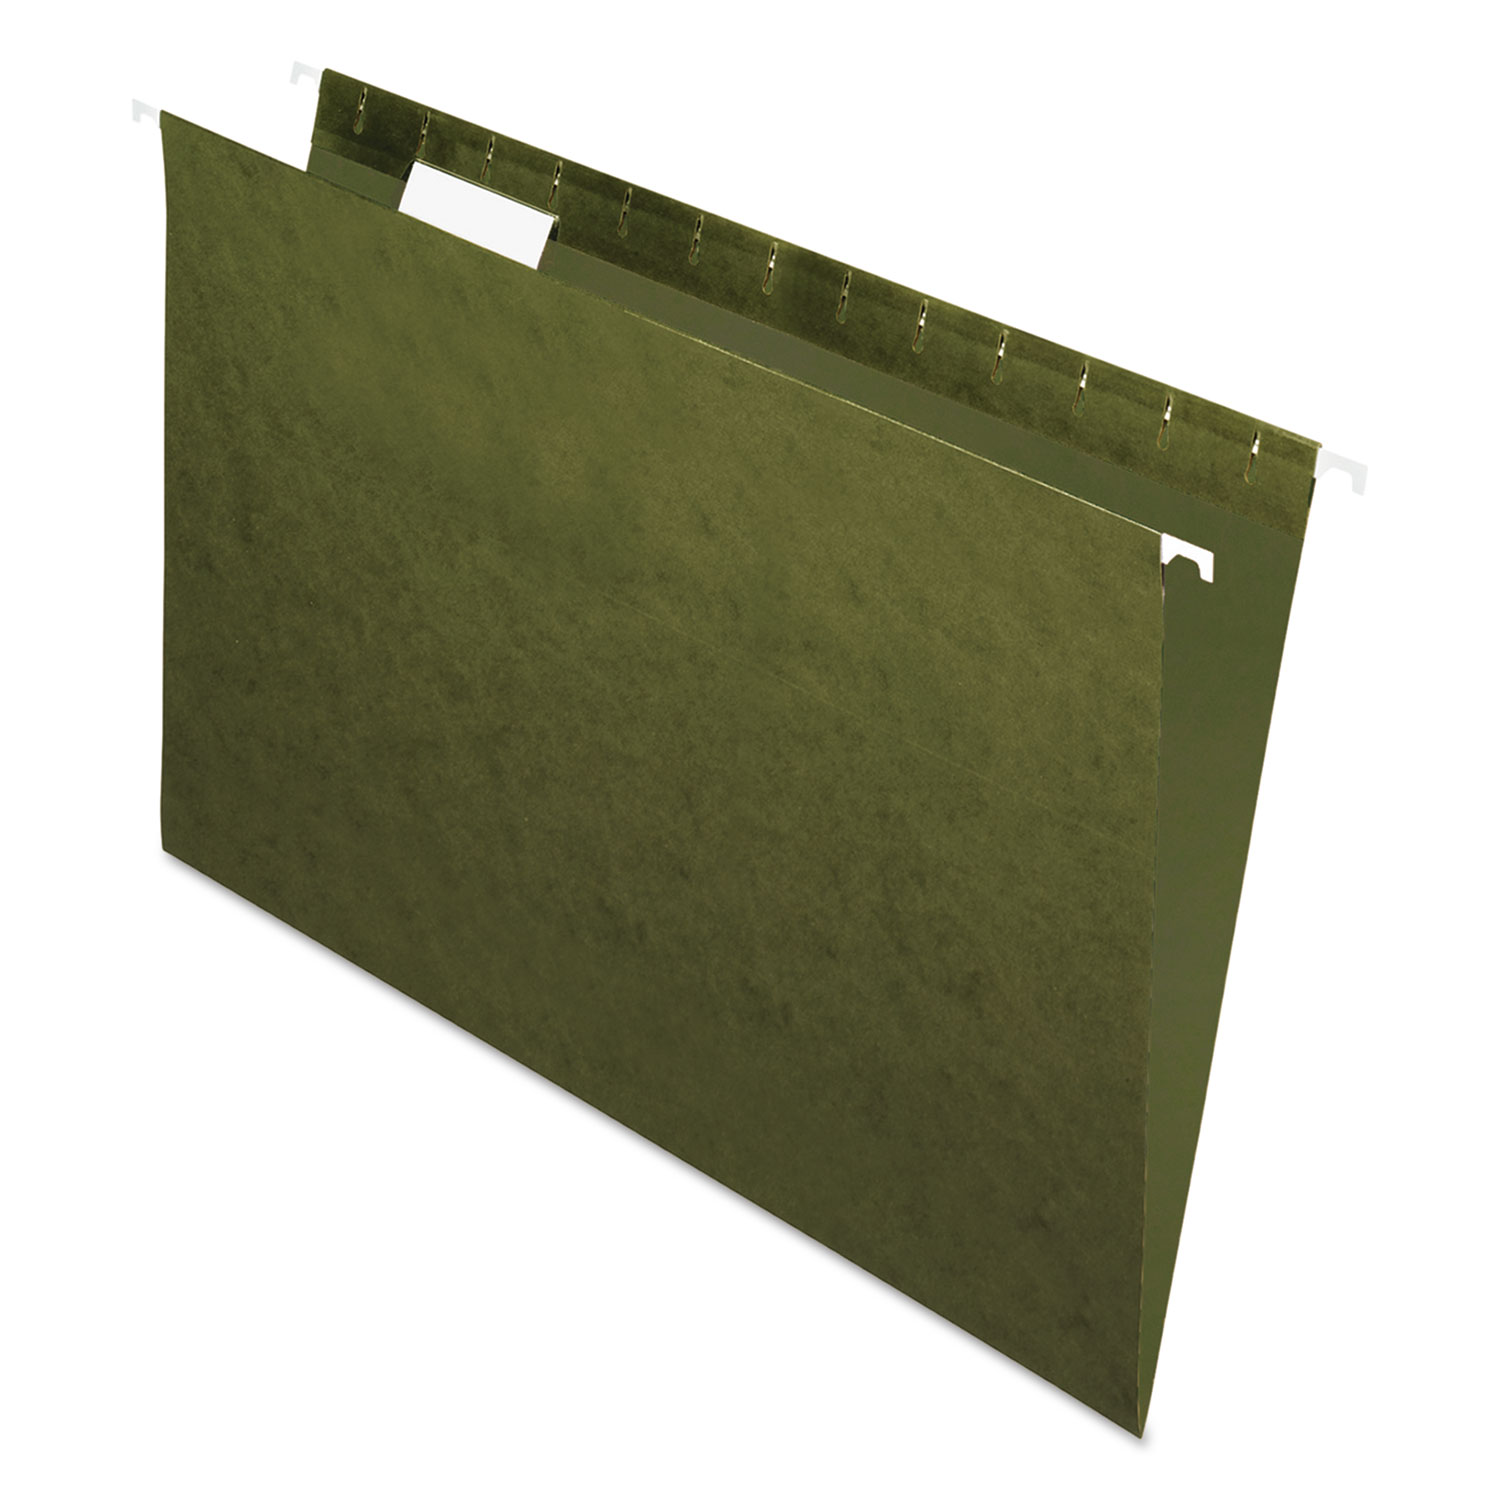  Pendaflex 81622 Standard Green Hanging Folders, Legal Size, 1/5-Cut Tab, Standard Green, 25/Box (PFX81622) 